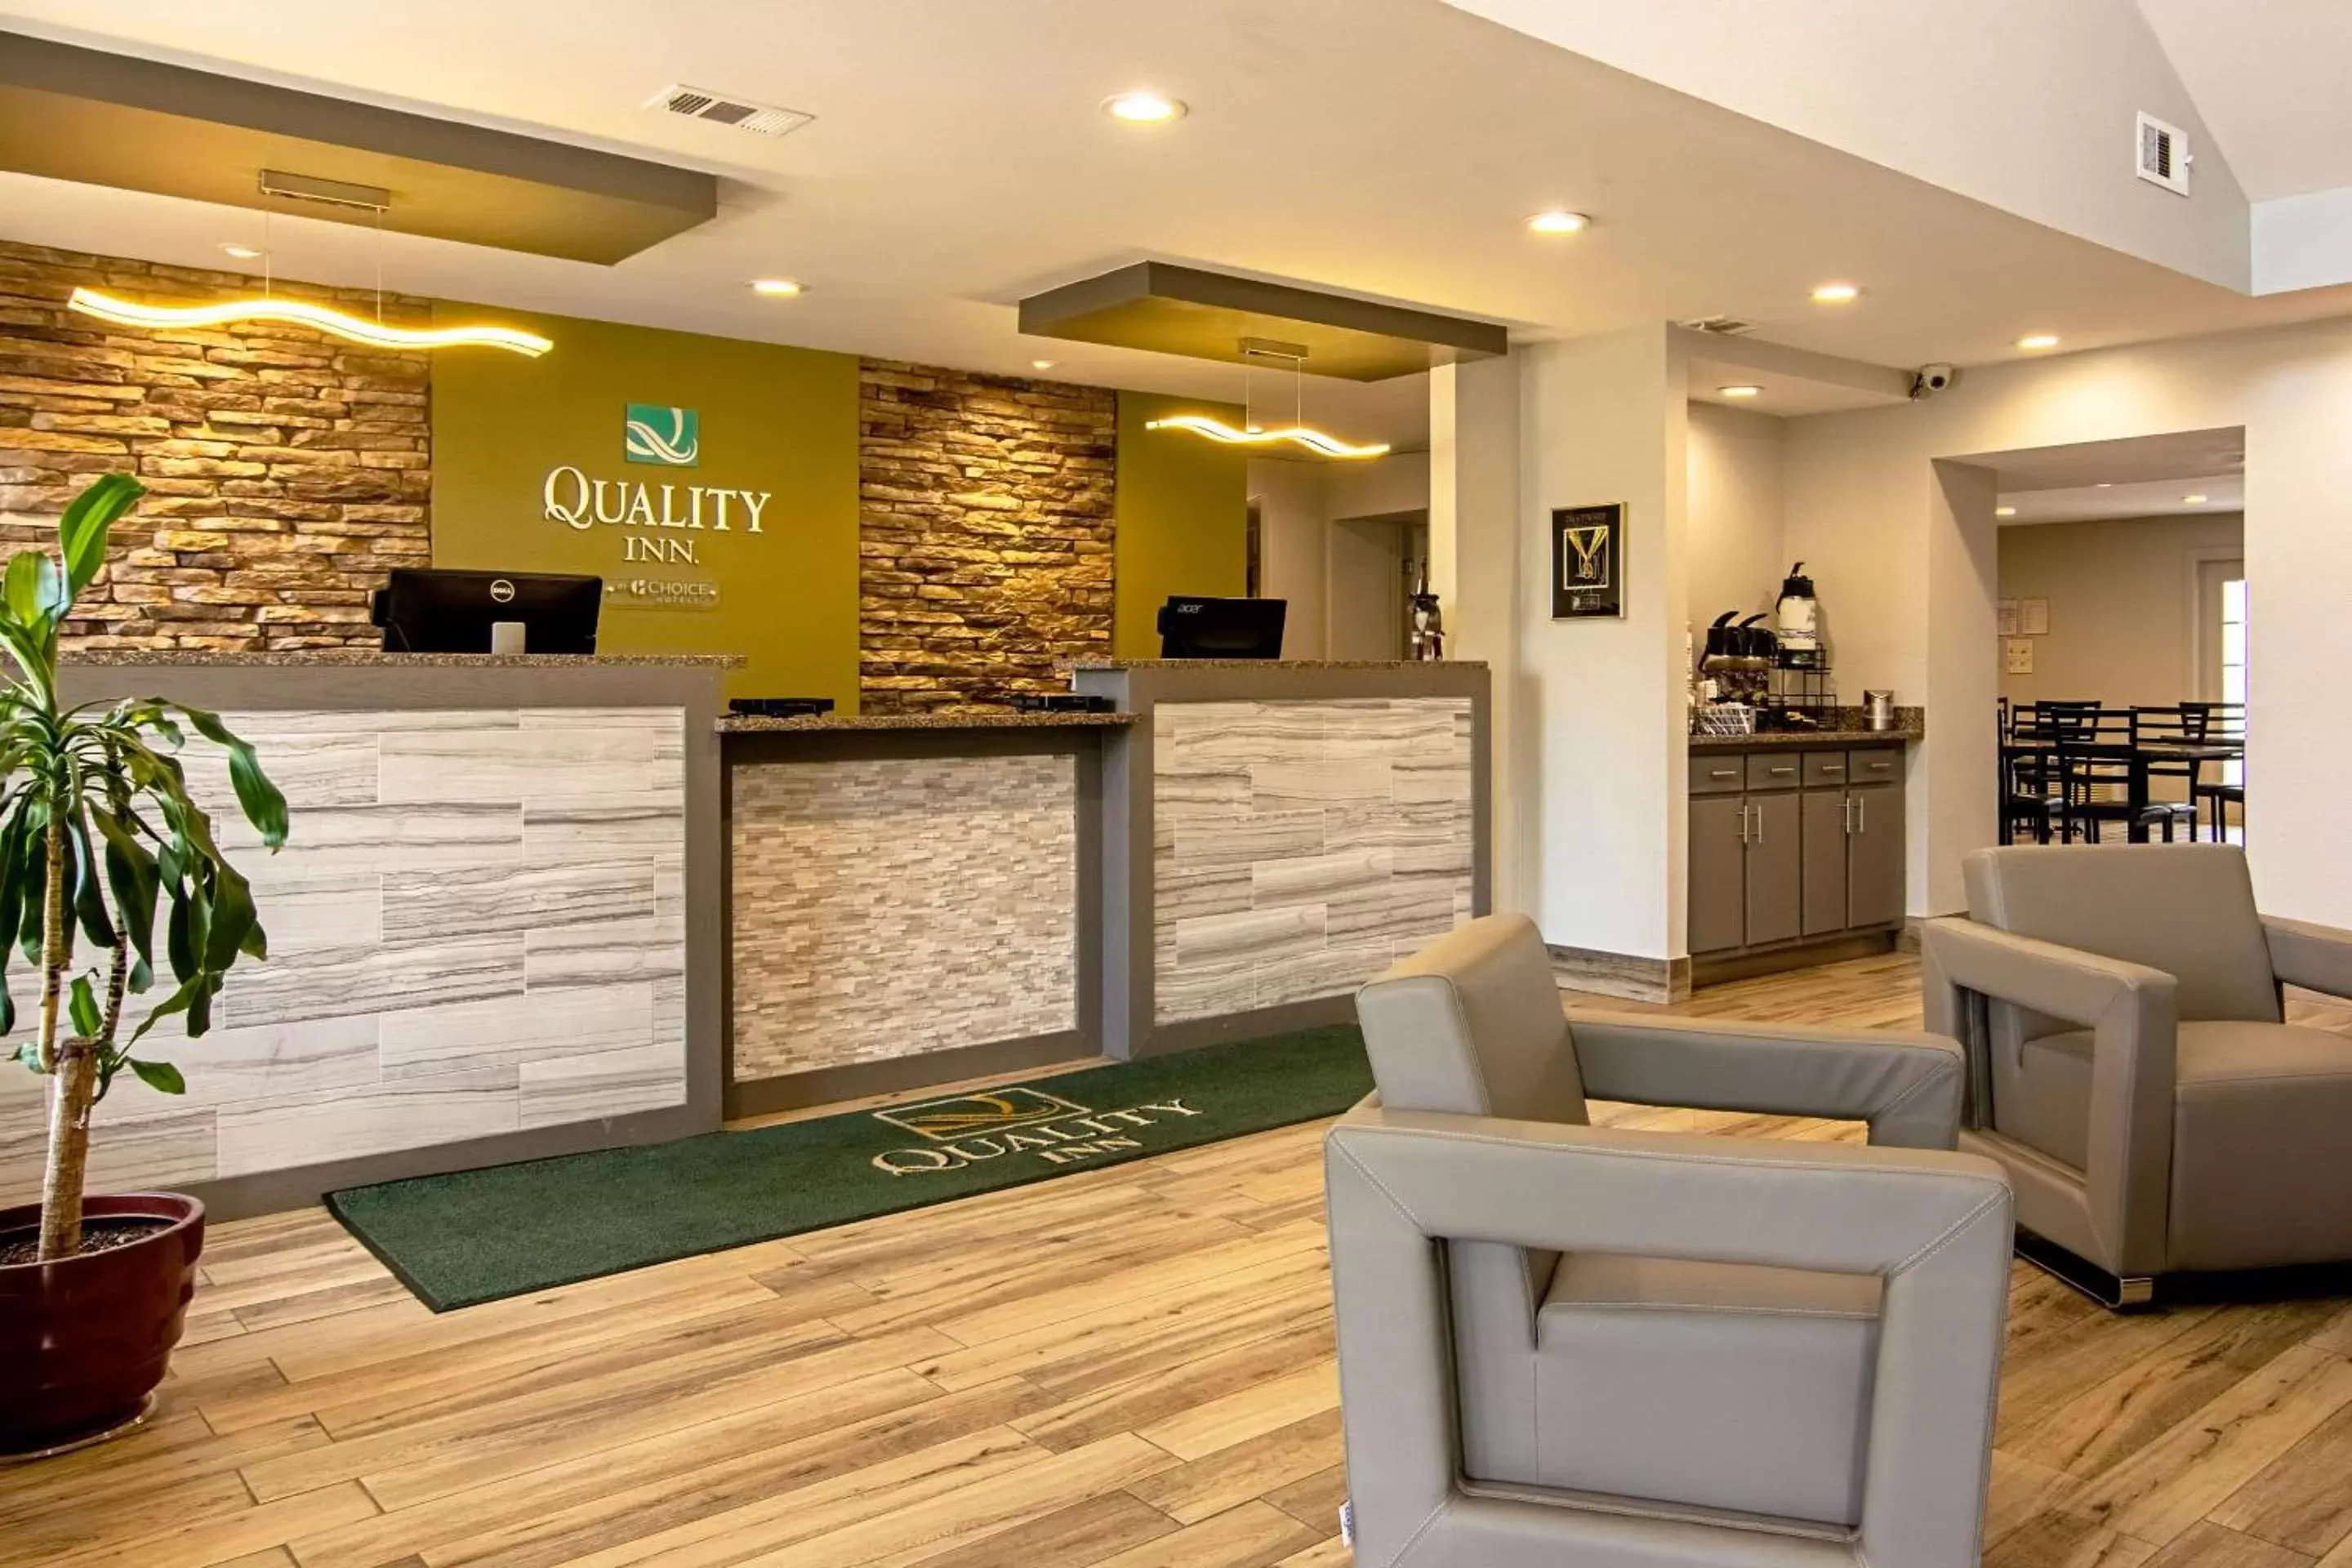 Lobby or reception, Lobby/Reception in Quality Inn Lagrange